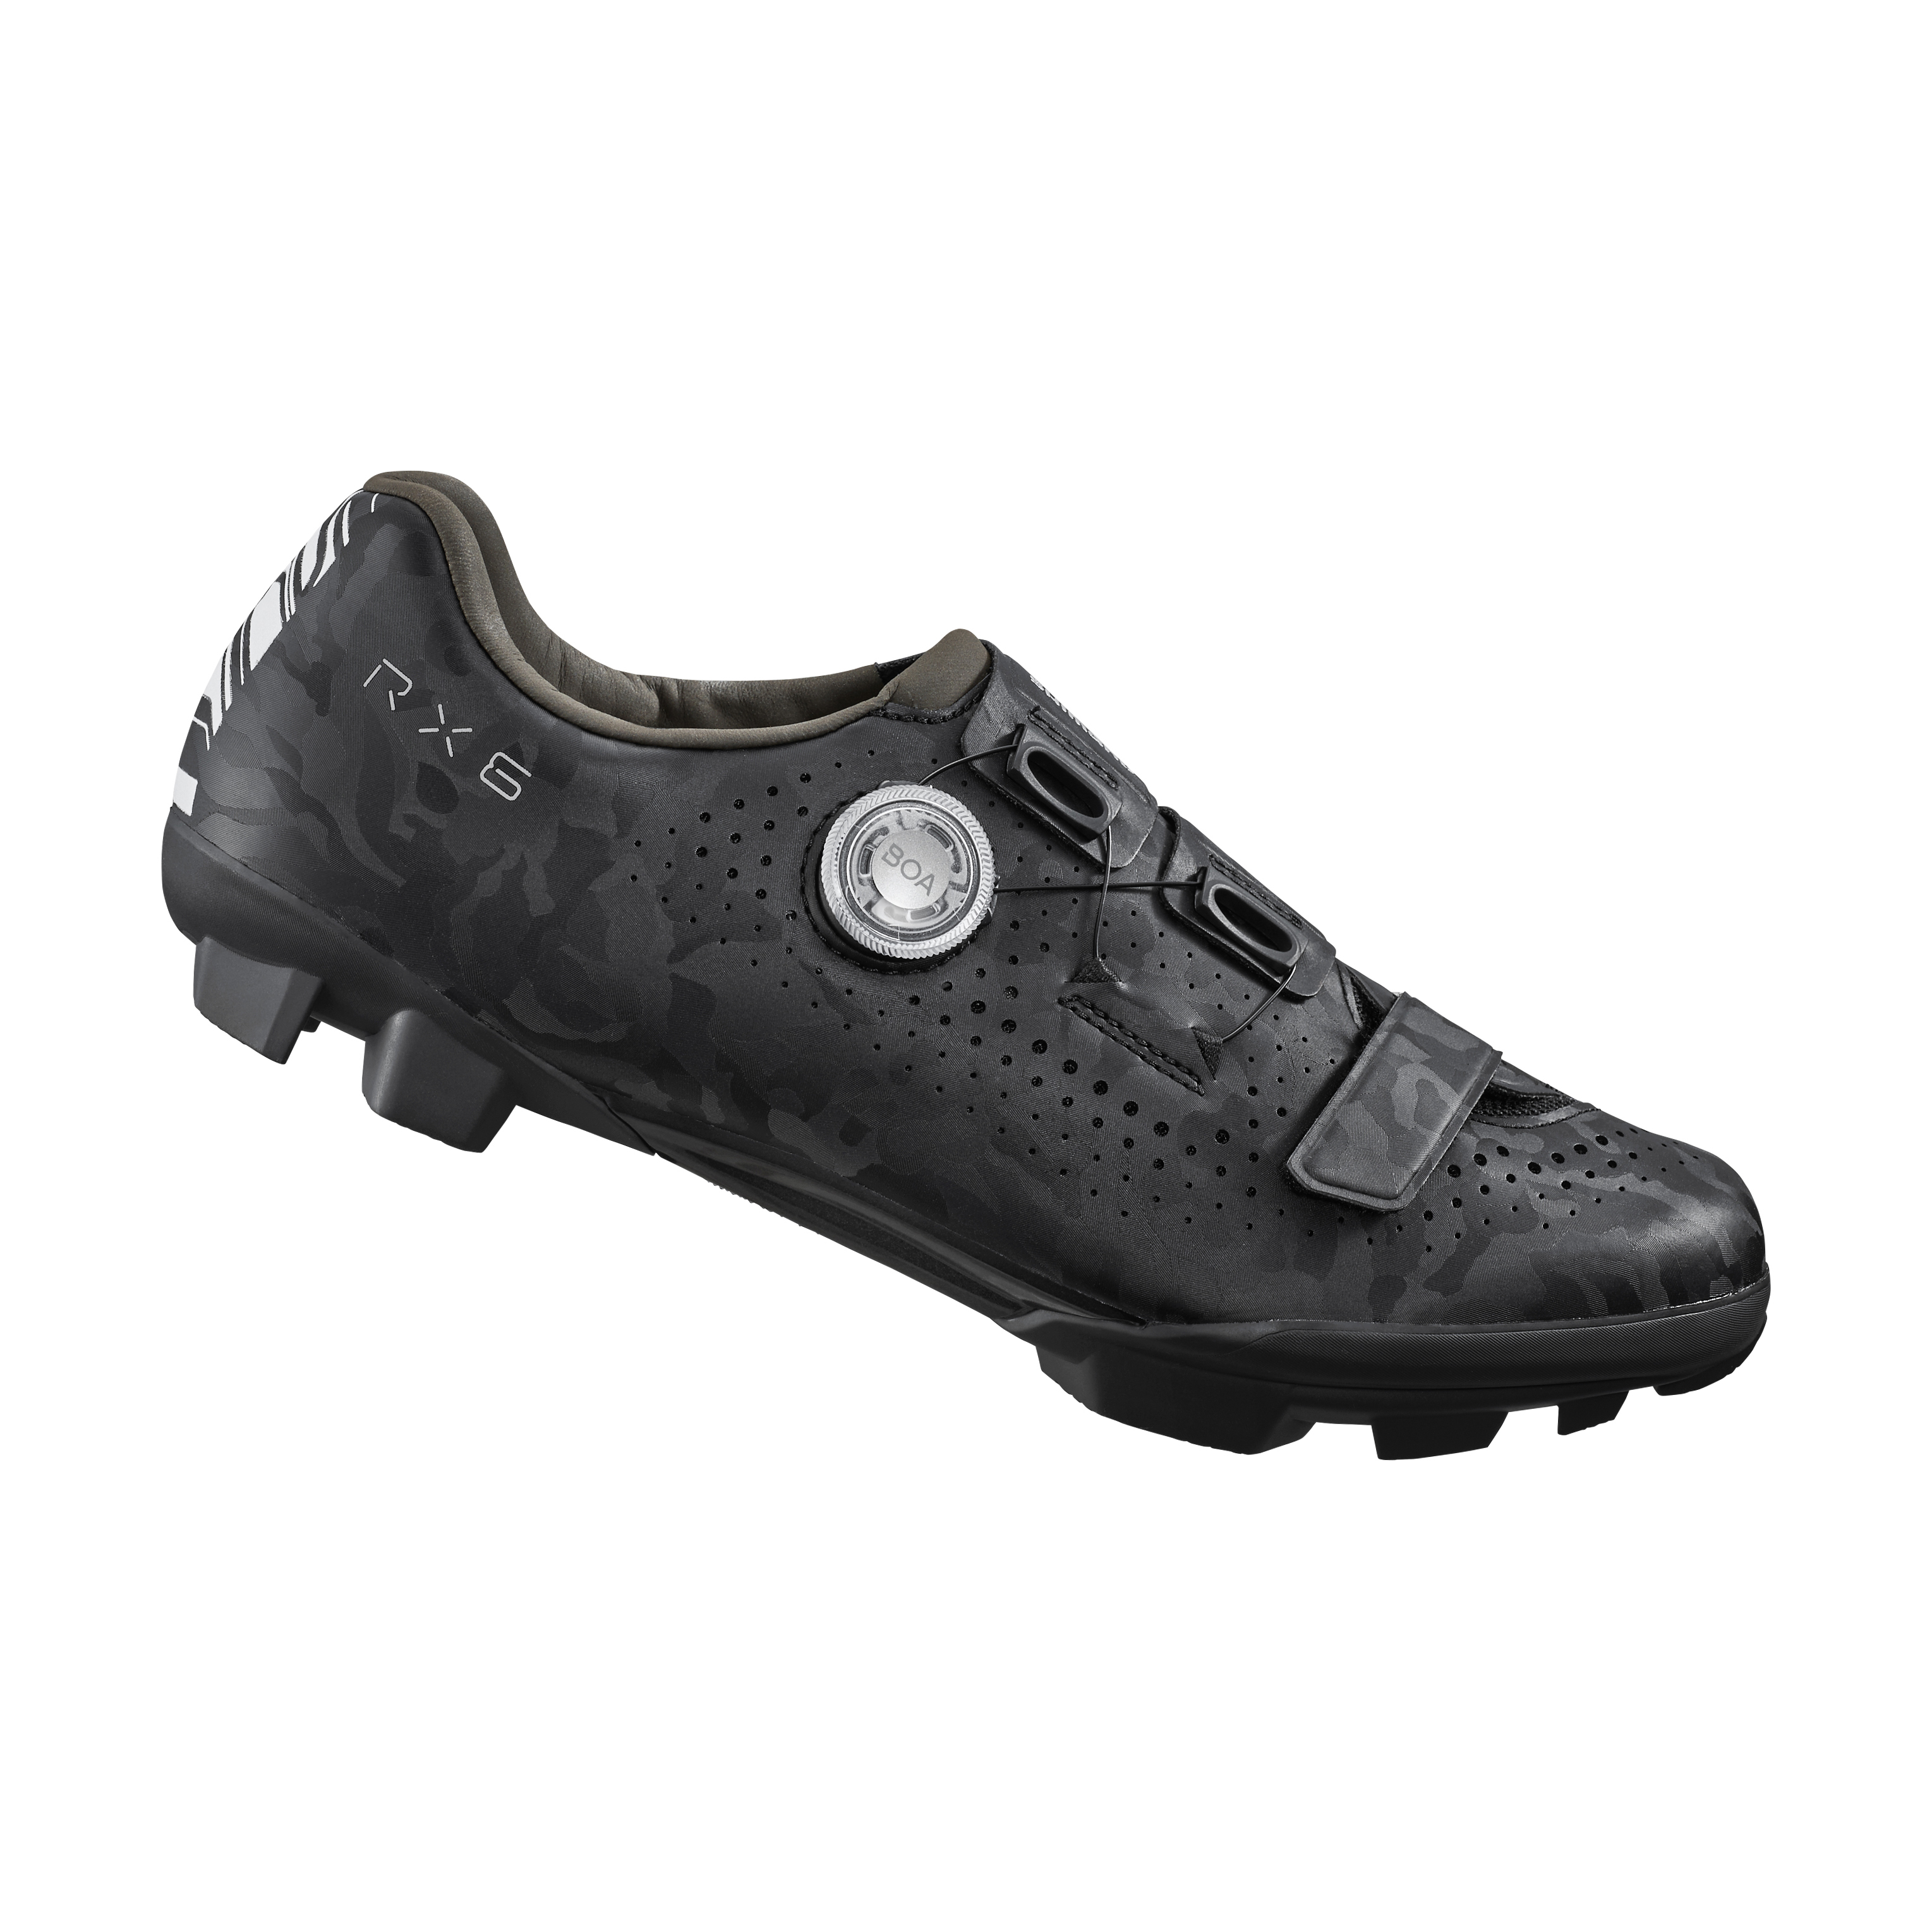 SHIMANO gravel obuv SH-RX600, pánská, černá, 38